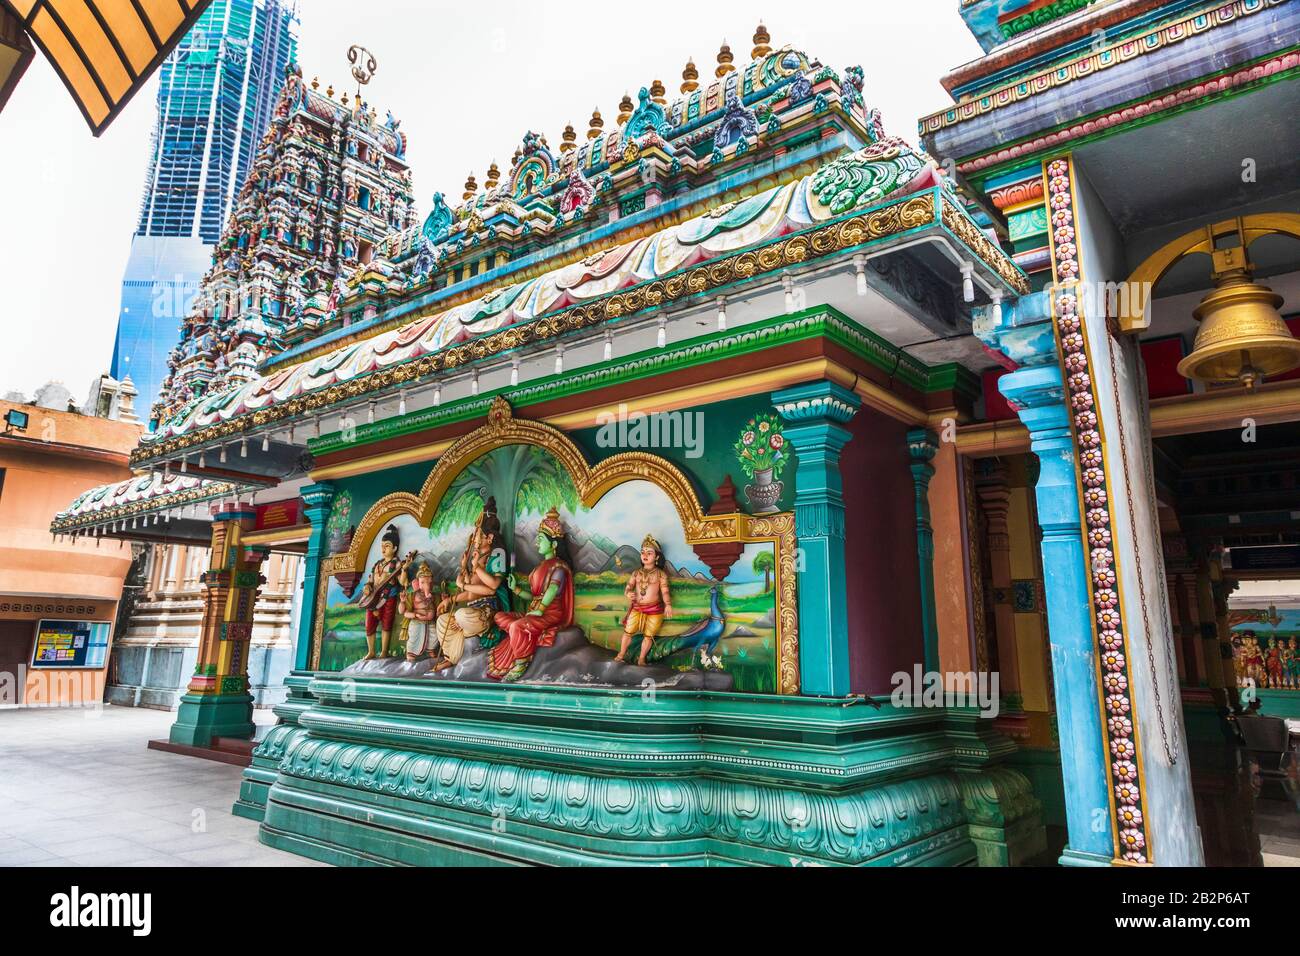 Dekorative religiöse Tafel, die hinduistische Götter im Tempel von Sri Mahamariamman zeigt, der ältesten in Malaysia, Kuala Lumpur, Malaysia, Asien Stockfoto